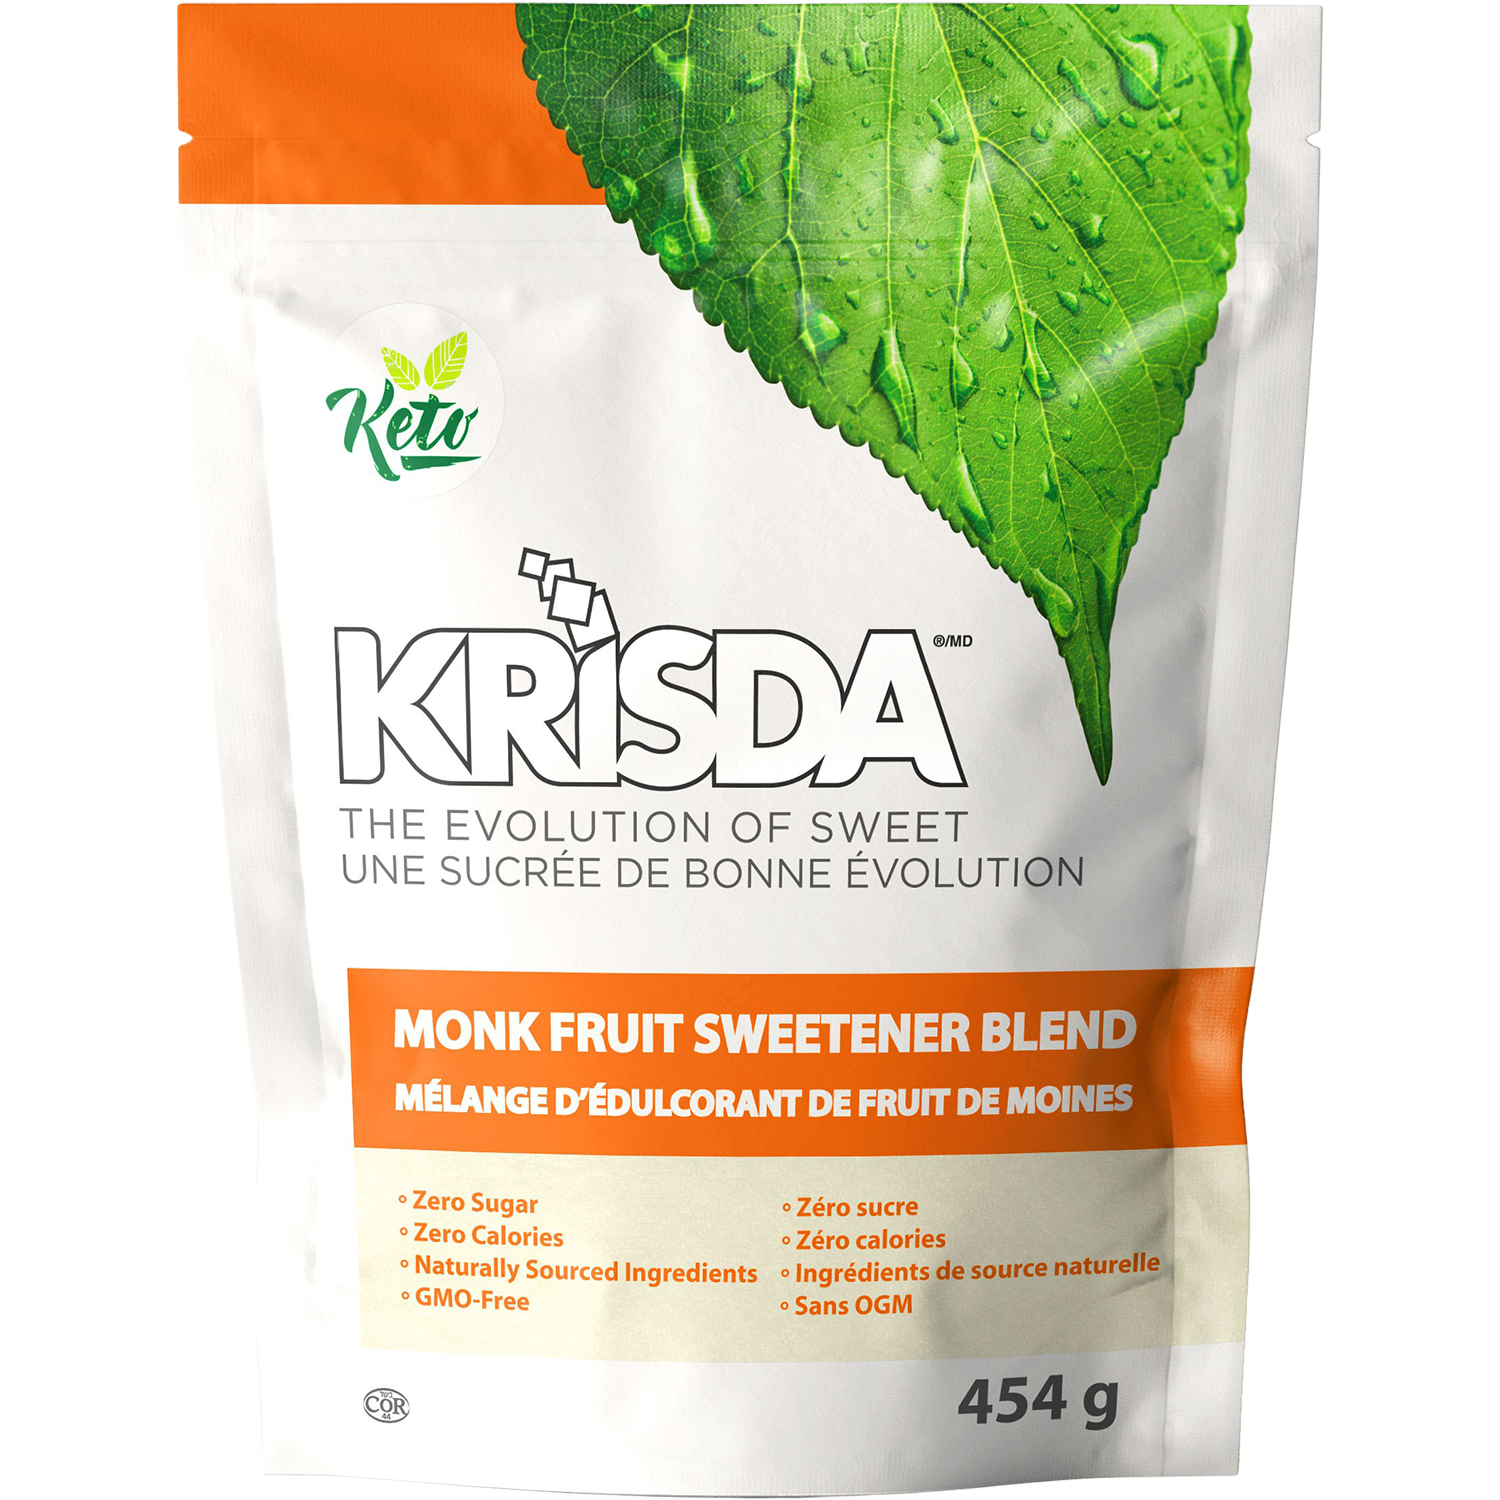 Krisda Natural Sweeteners